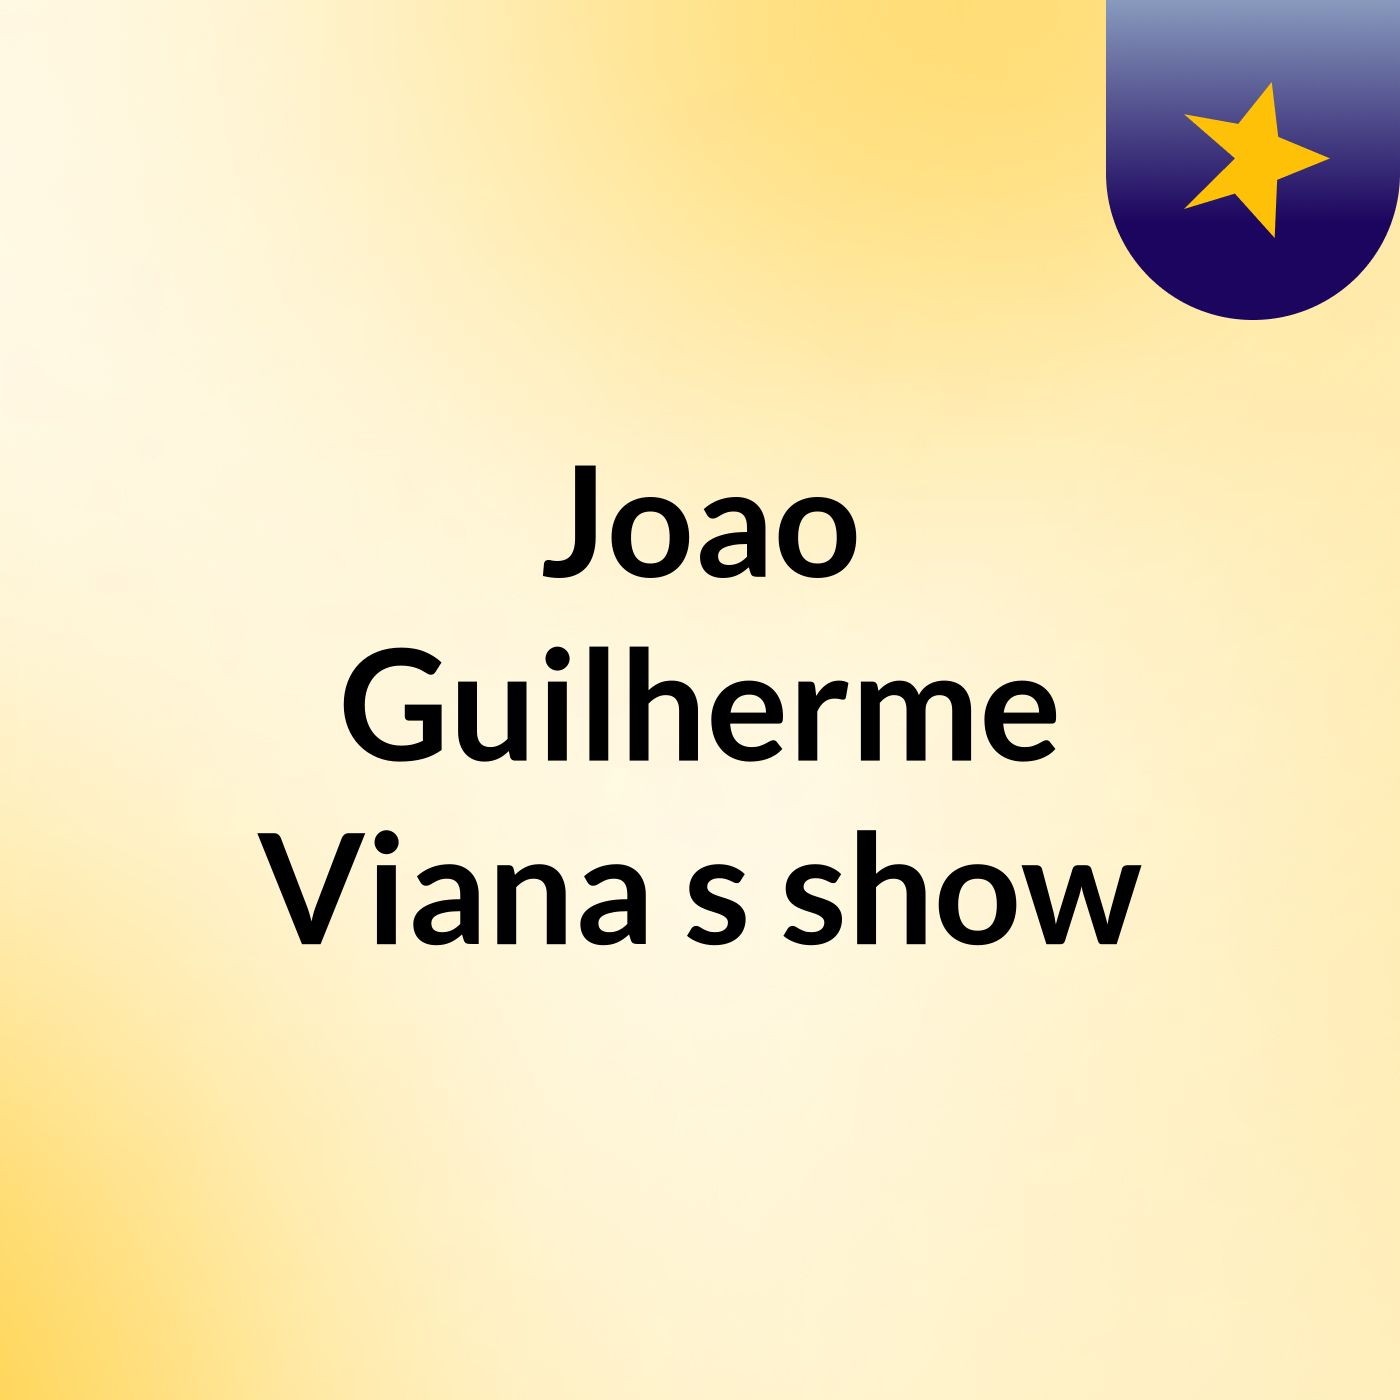 Joao Guilherme Viana's show